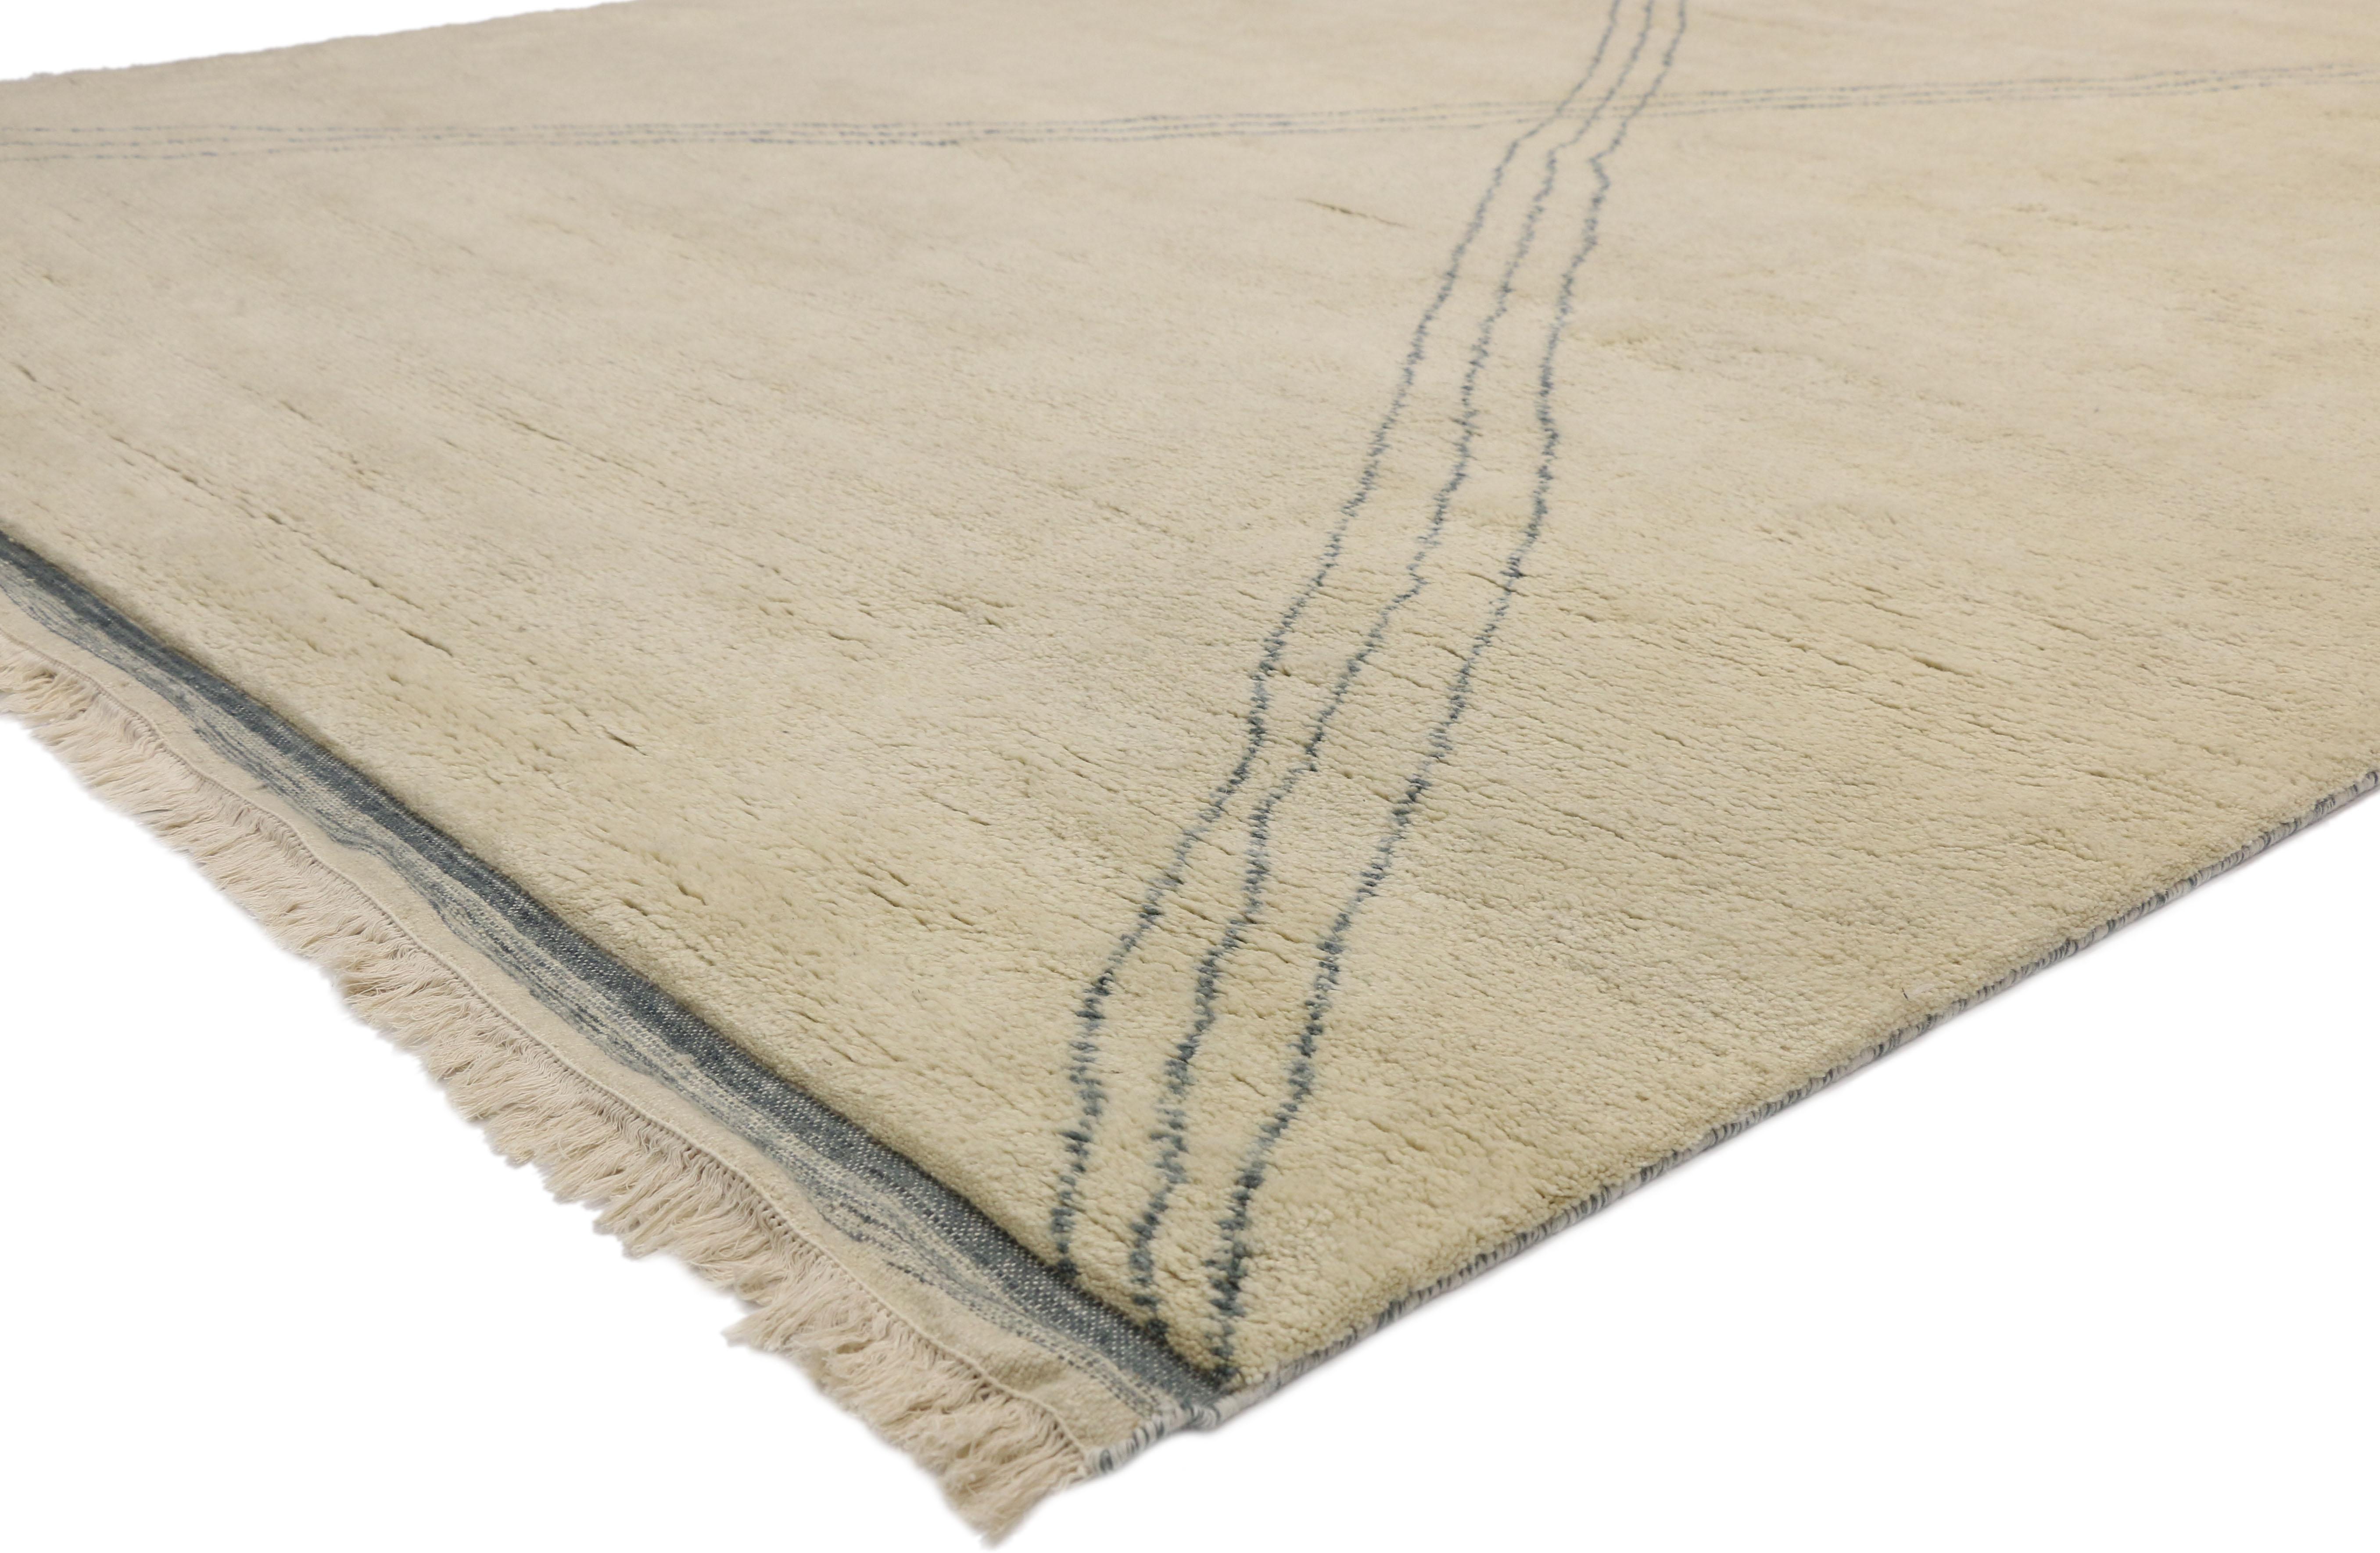 30500, nouveau tapis marocain contemporain au style moderniste et aux vibrations hygge. Ce tapis marocain contemporain en laine nouée à la main présente une grande forme en X composée de trois fines lignes grises sur un fond beige crème. Les détails